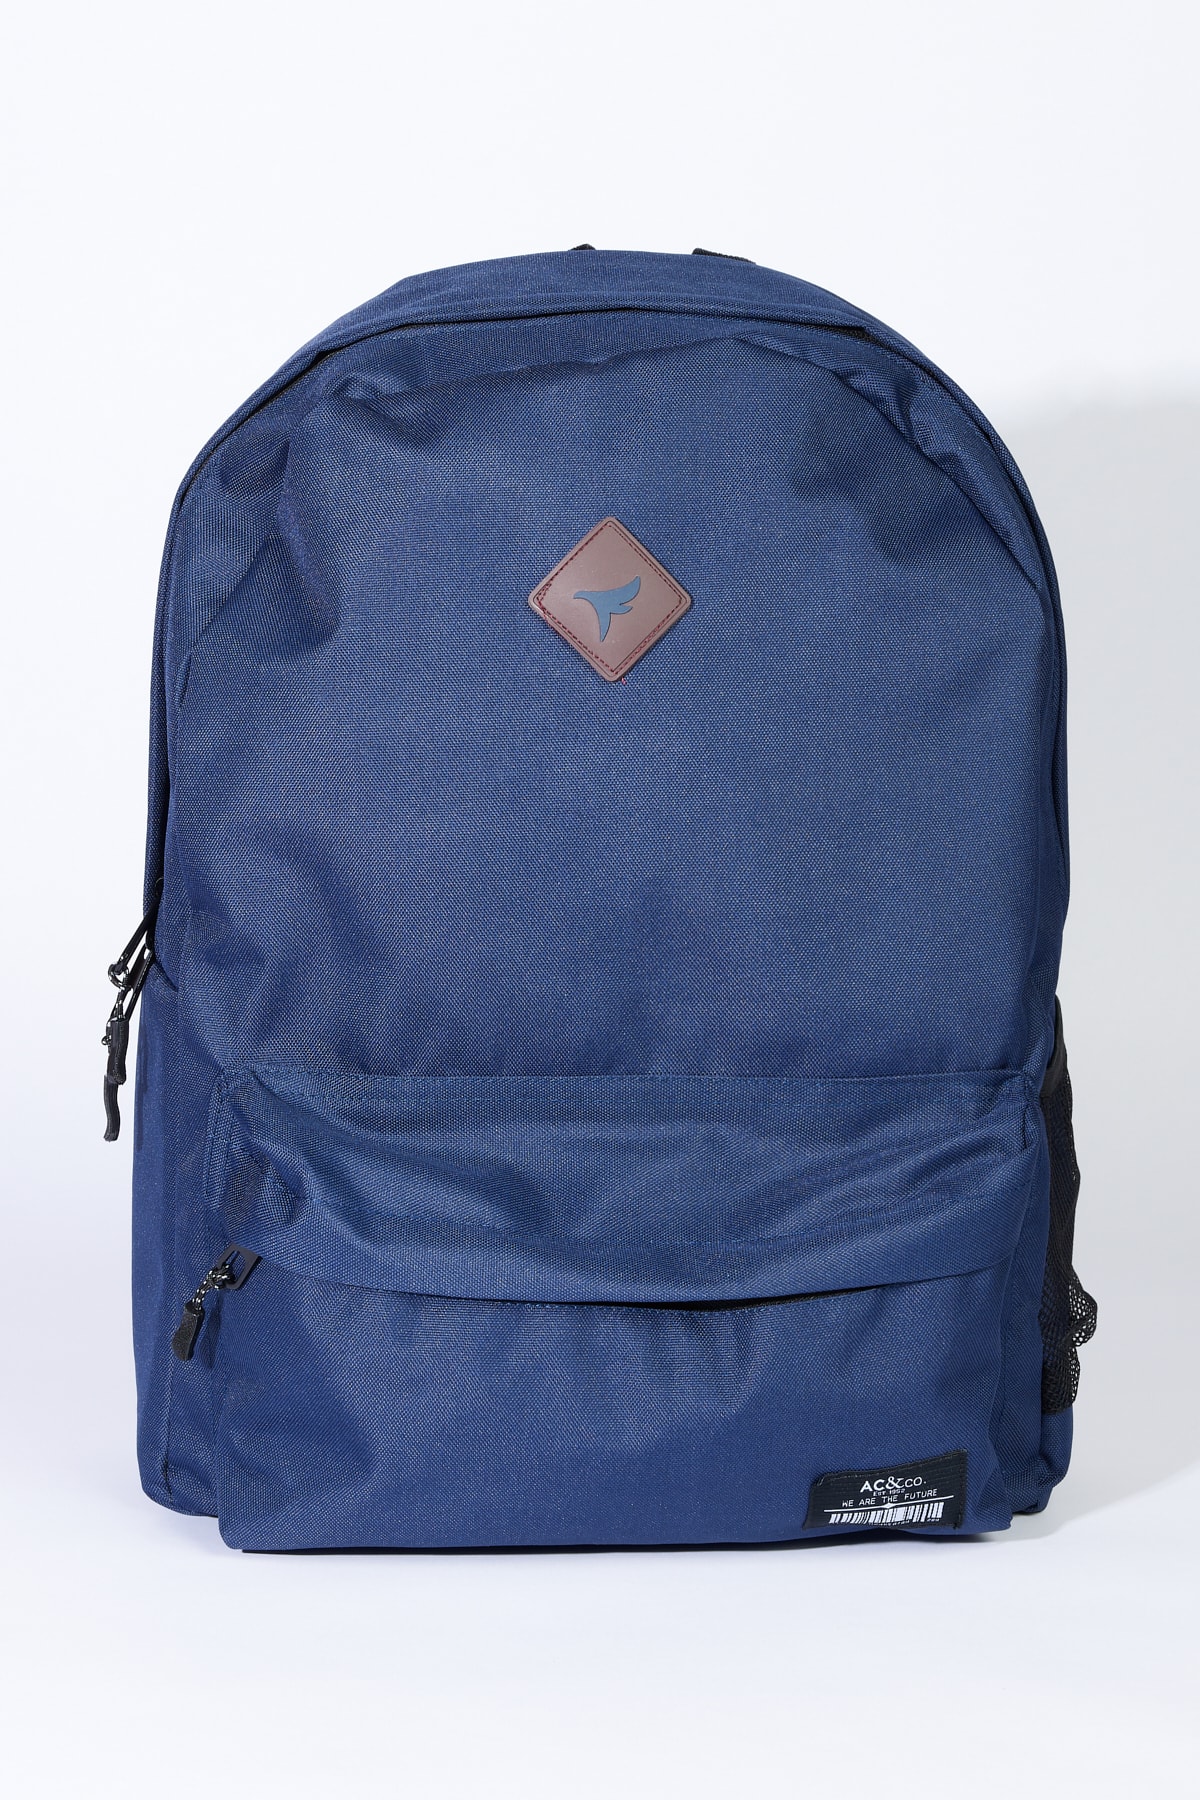 AC&Co / Altınyıldız Classics Navy Blue Logo Sports School-Backpack with Laptop Compartment